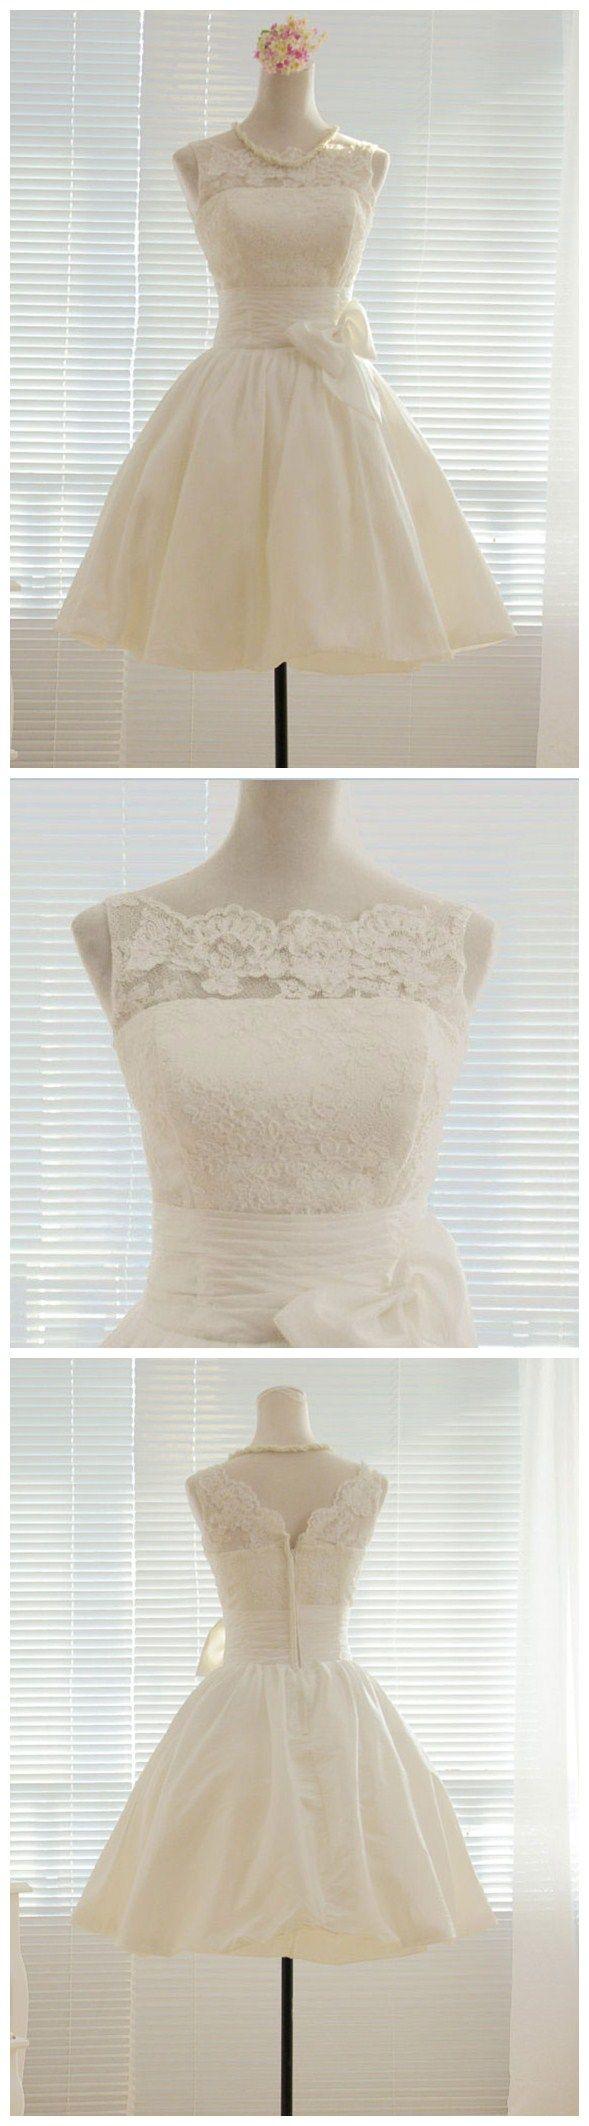 زفاف - Princess Ivory Lace And Taffeta Short Wedding Dress,Little White Dress,apd0115